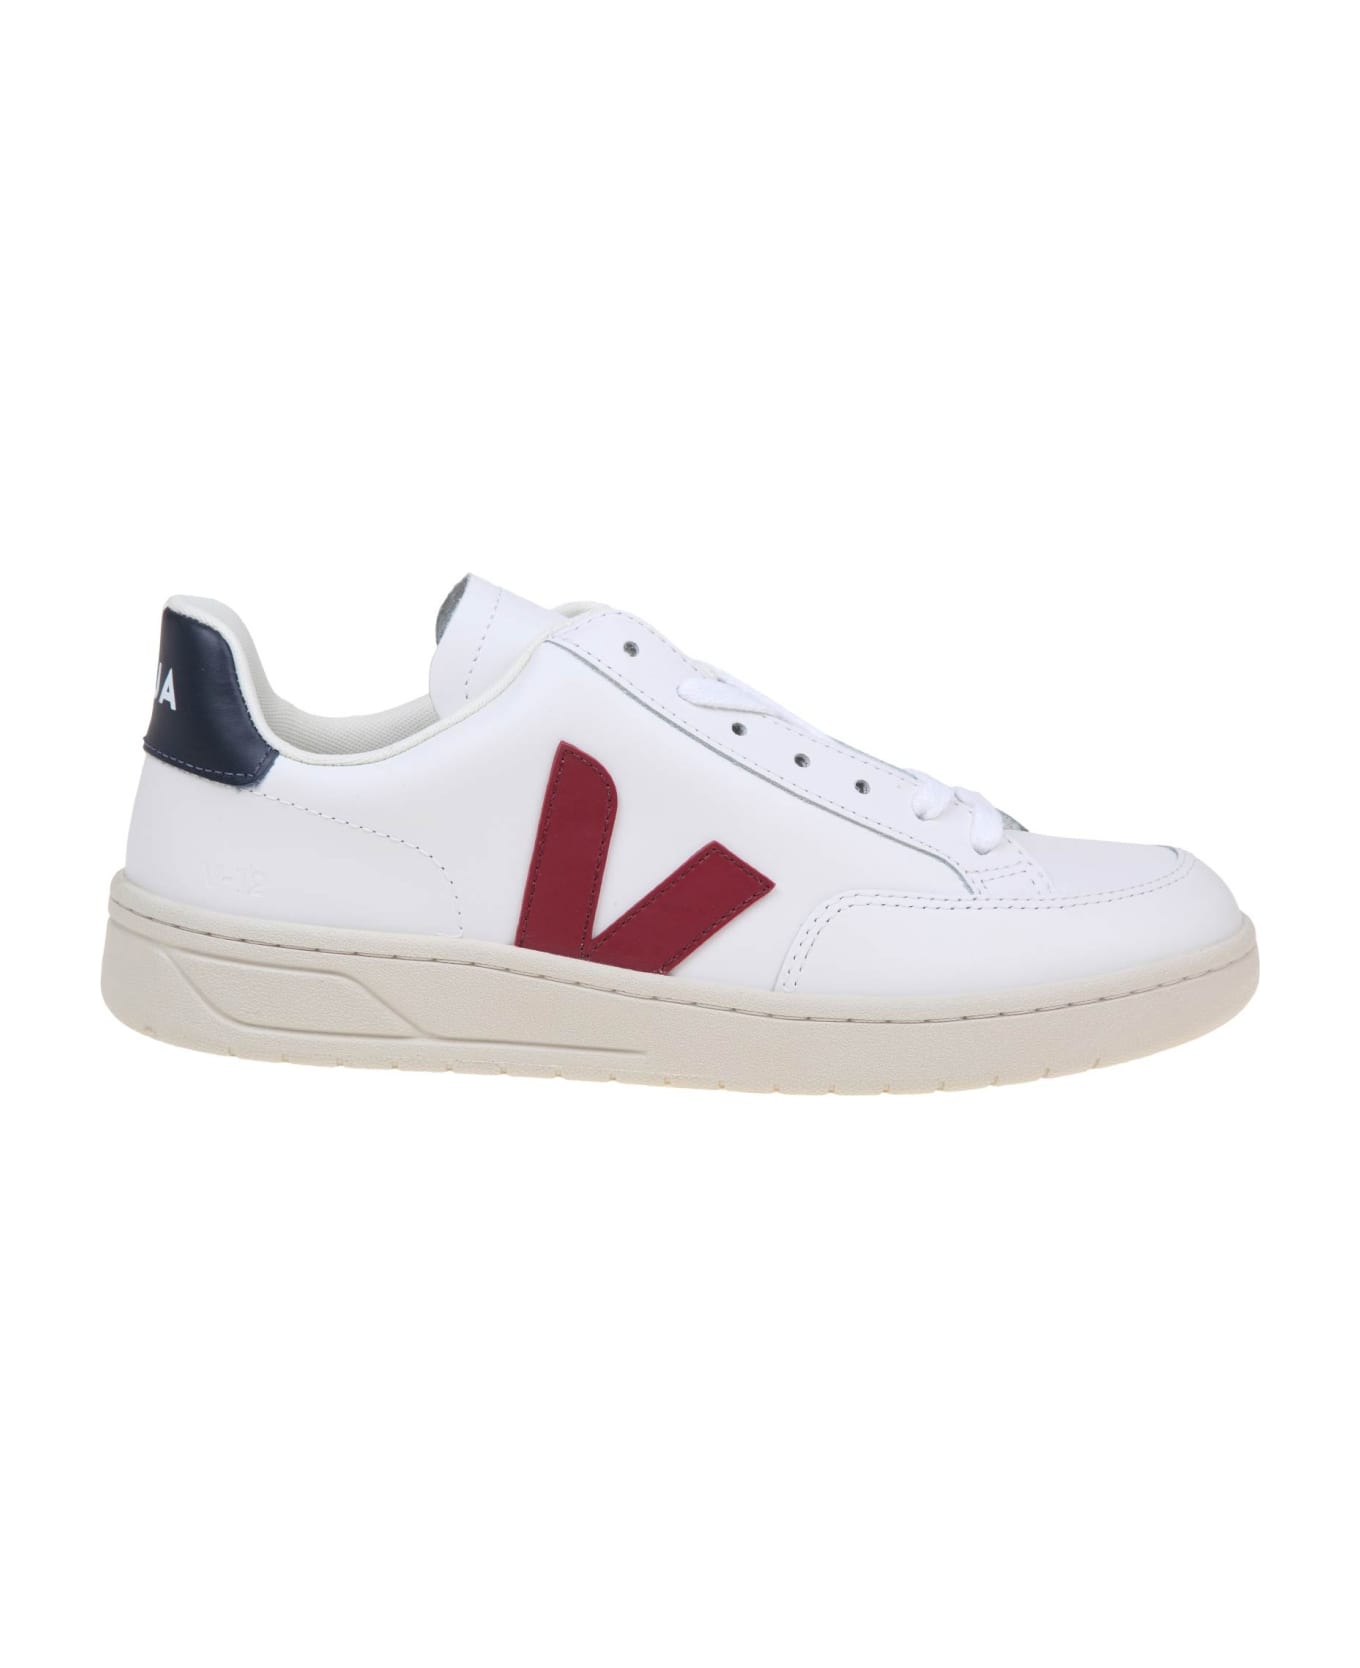 Veja V 12 Sneakers In White/marsala Leather